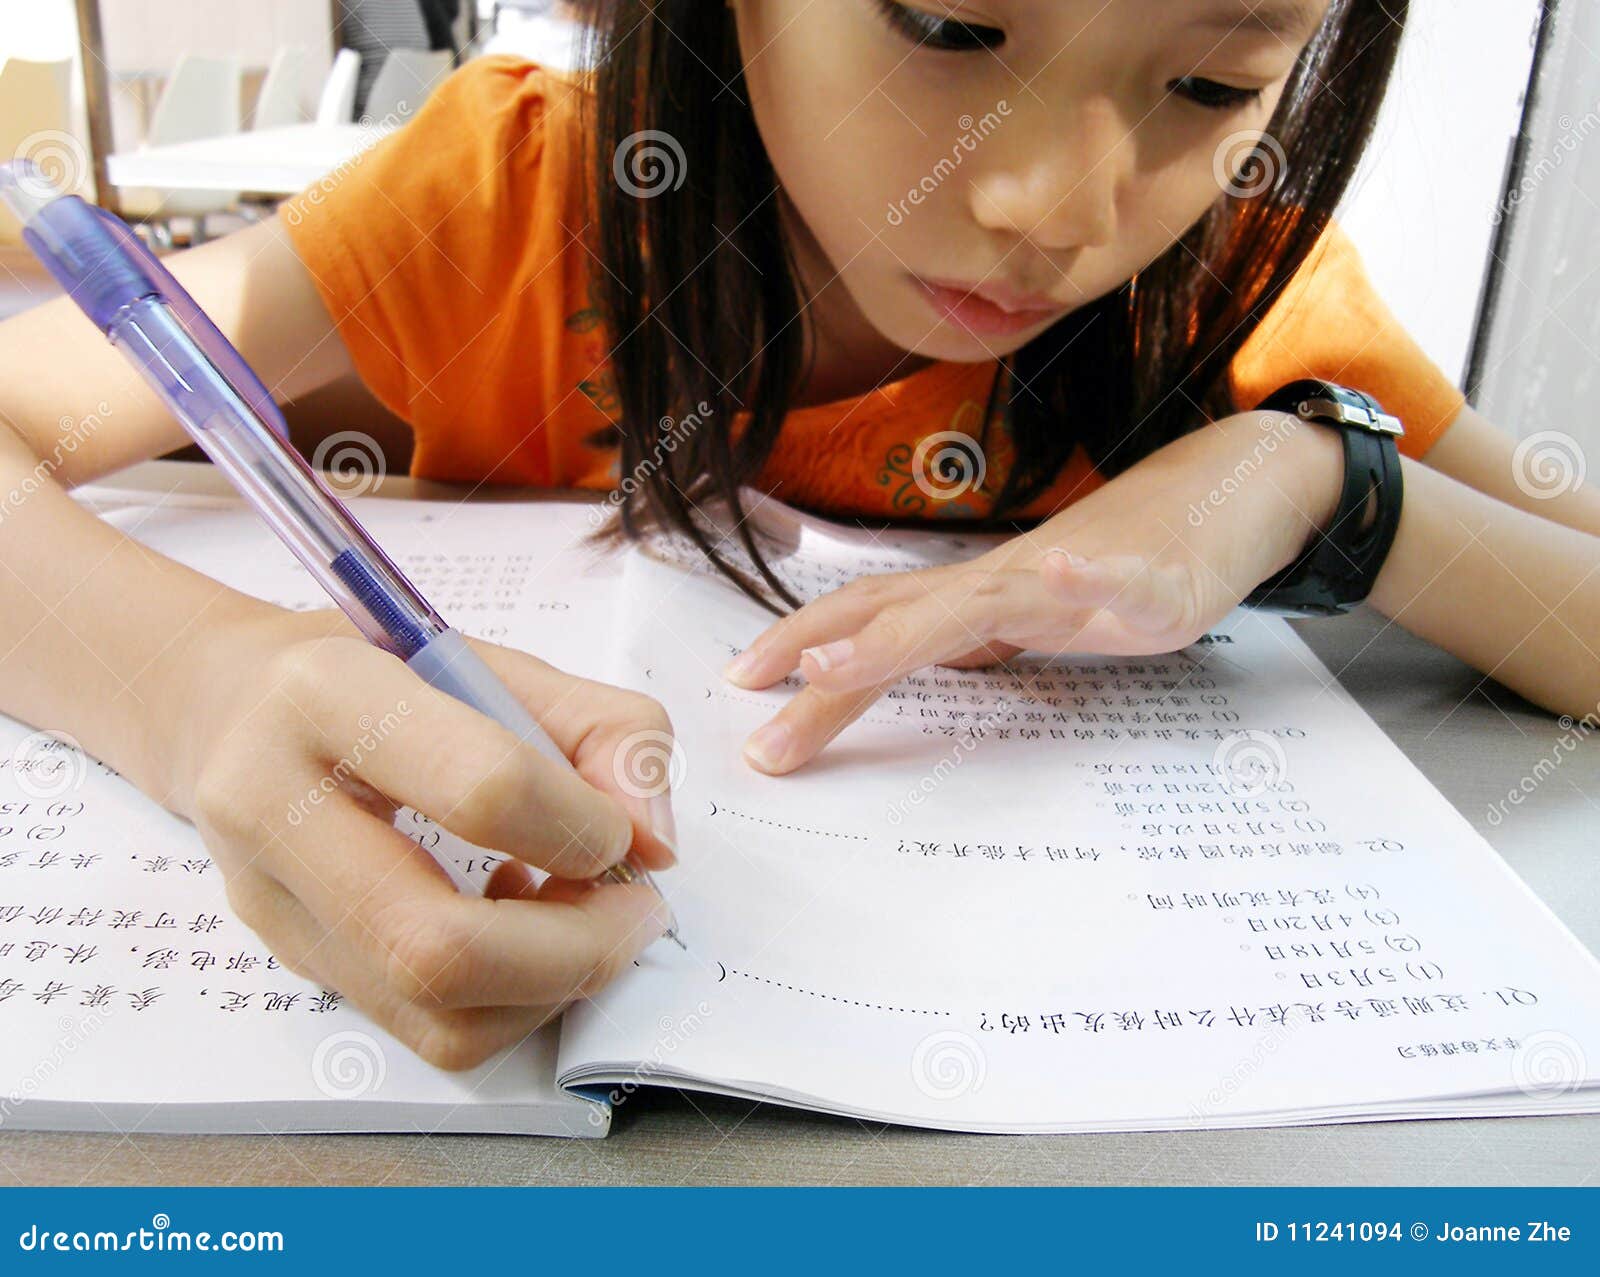 little girl doing homework